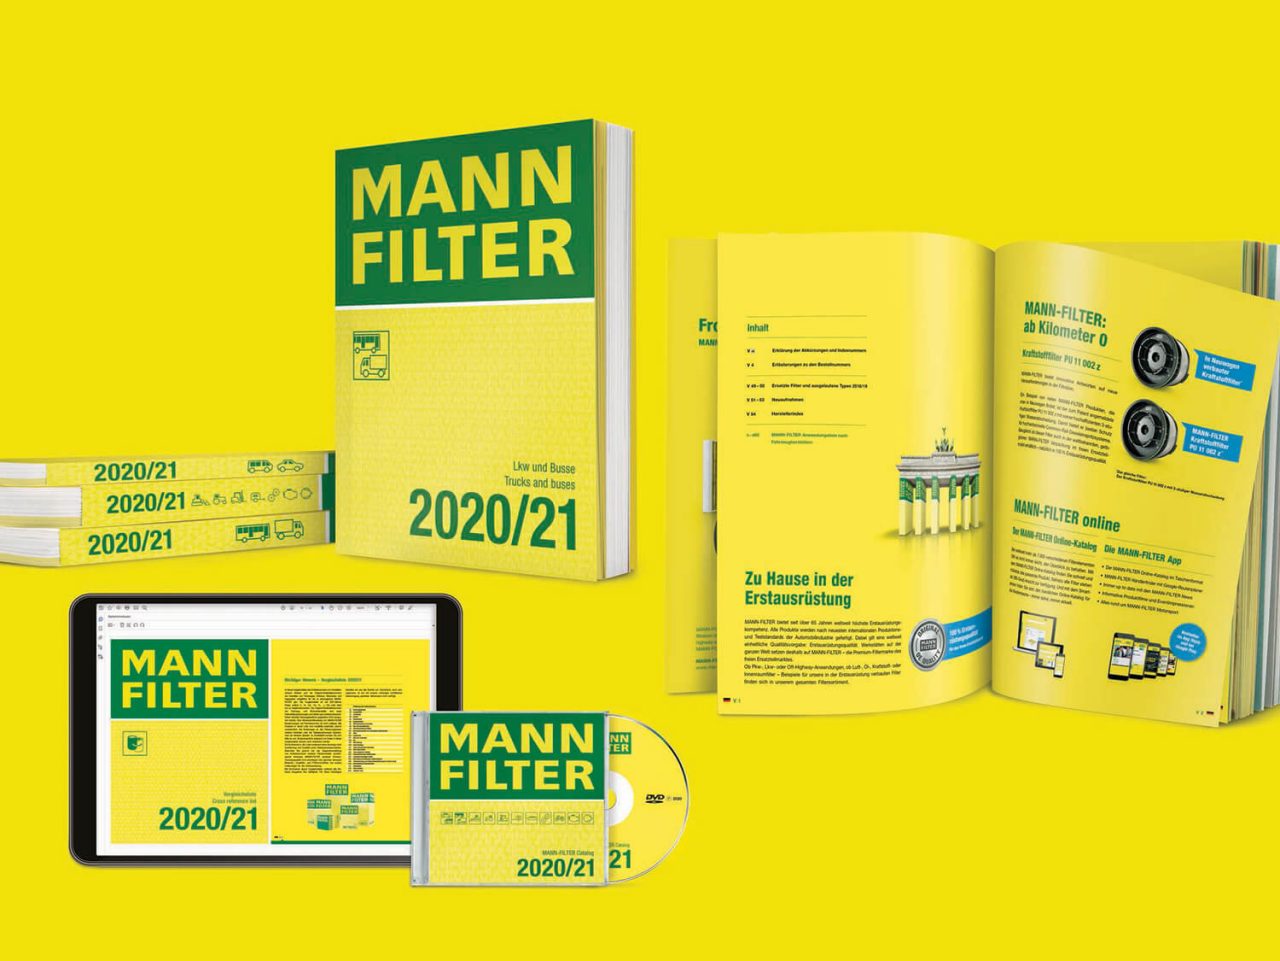 New MANN-FILTER Catalogs